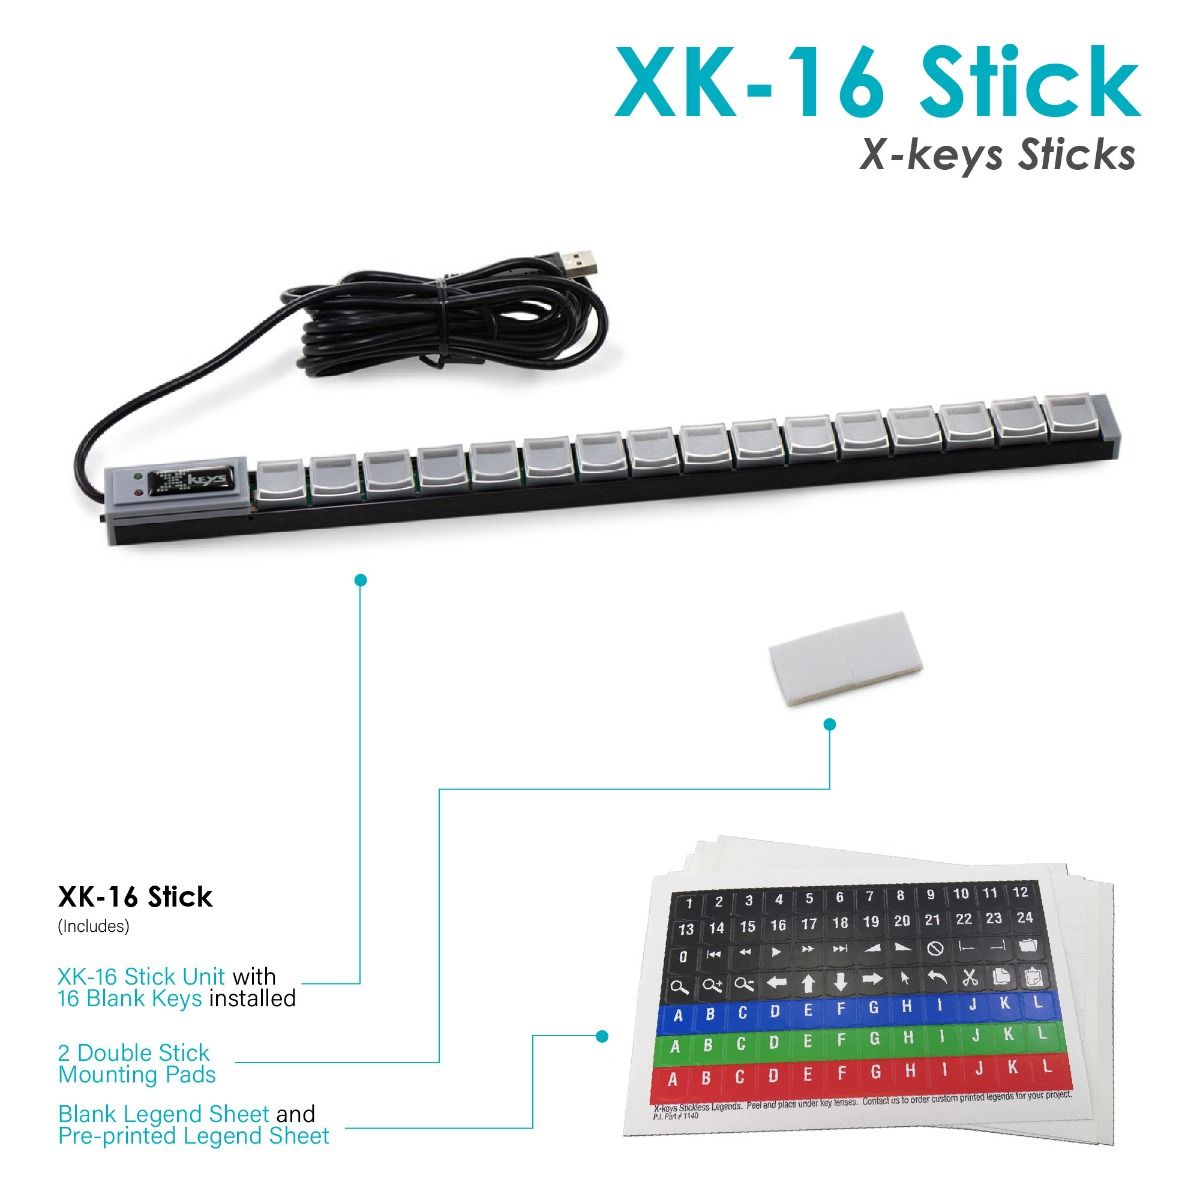 X-keys 16 Key USB Stick what's included